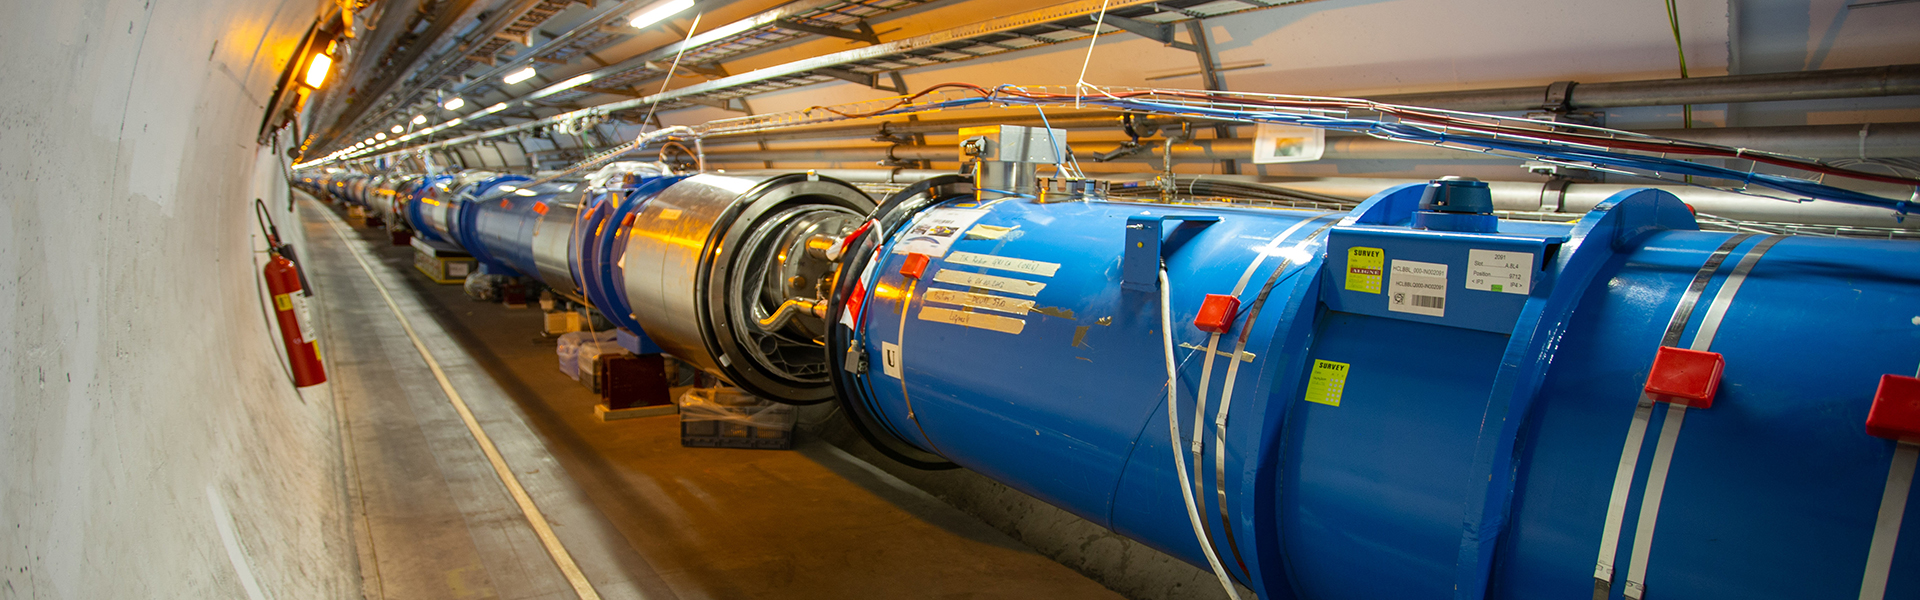 CERN Teilchenbeschleuniger LHC